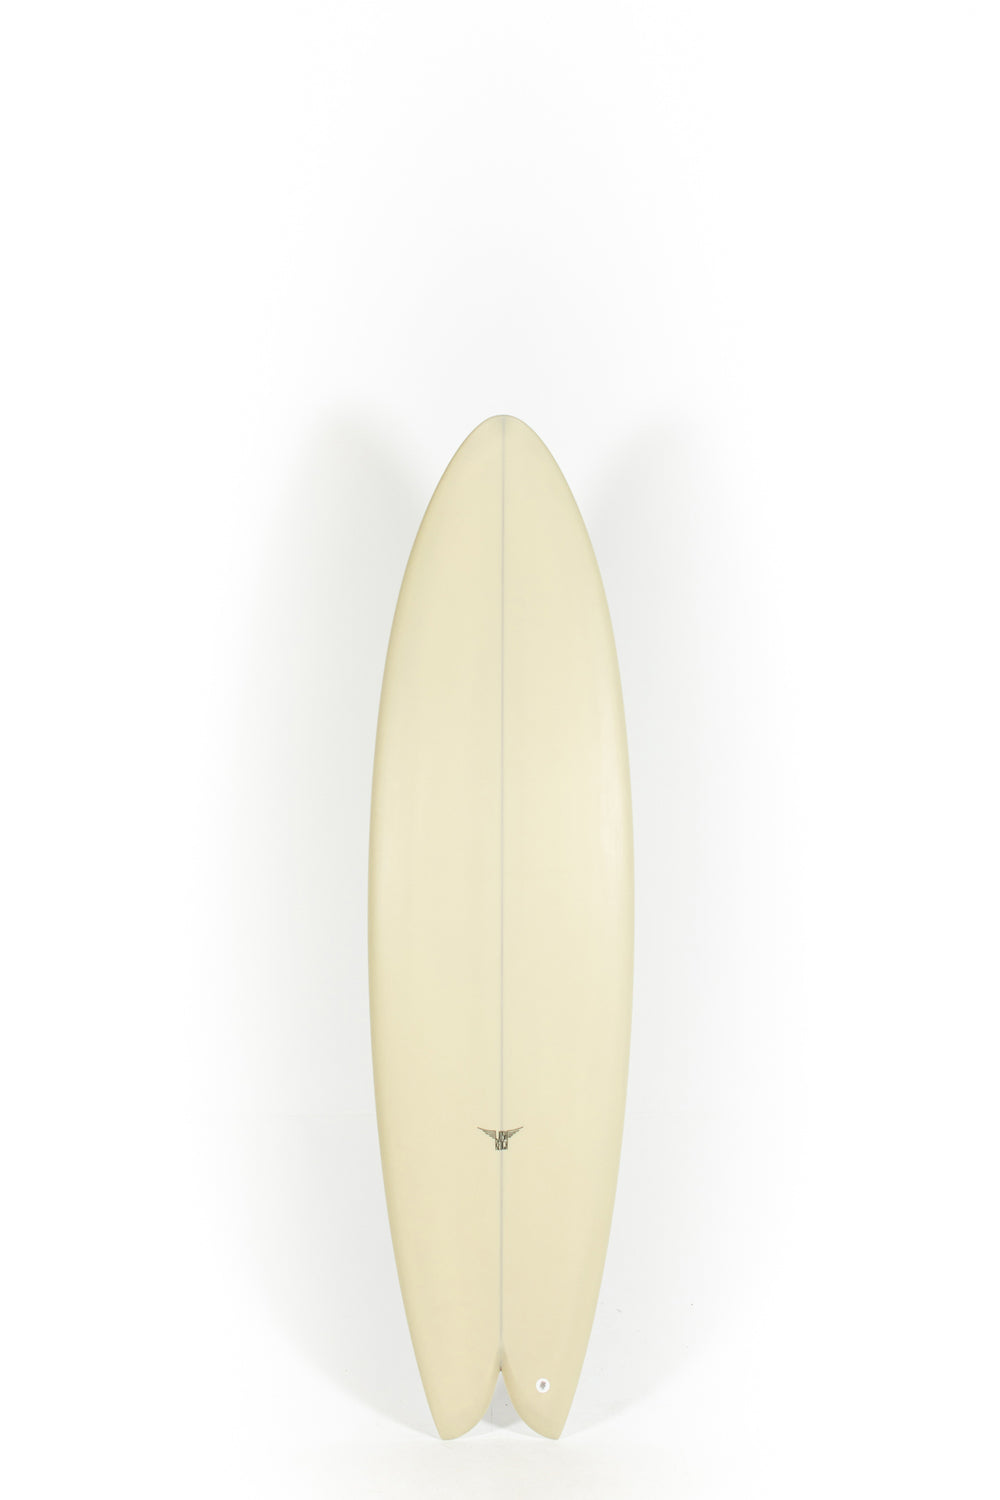 Pukas Surf Shop_Joshua Keogh Surfboard - M2 by Joshua Keogh - 6'8